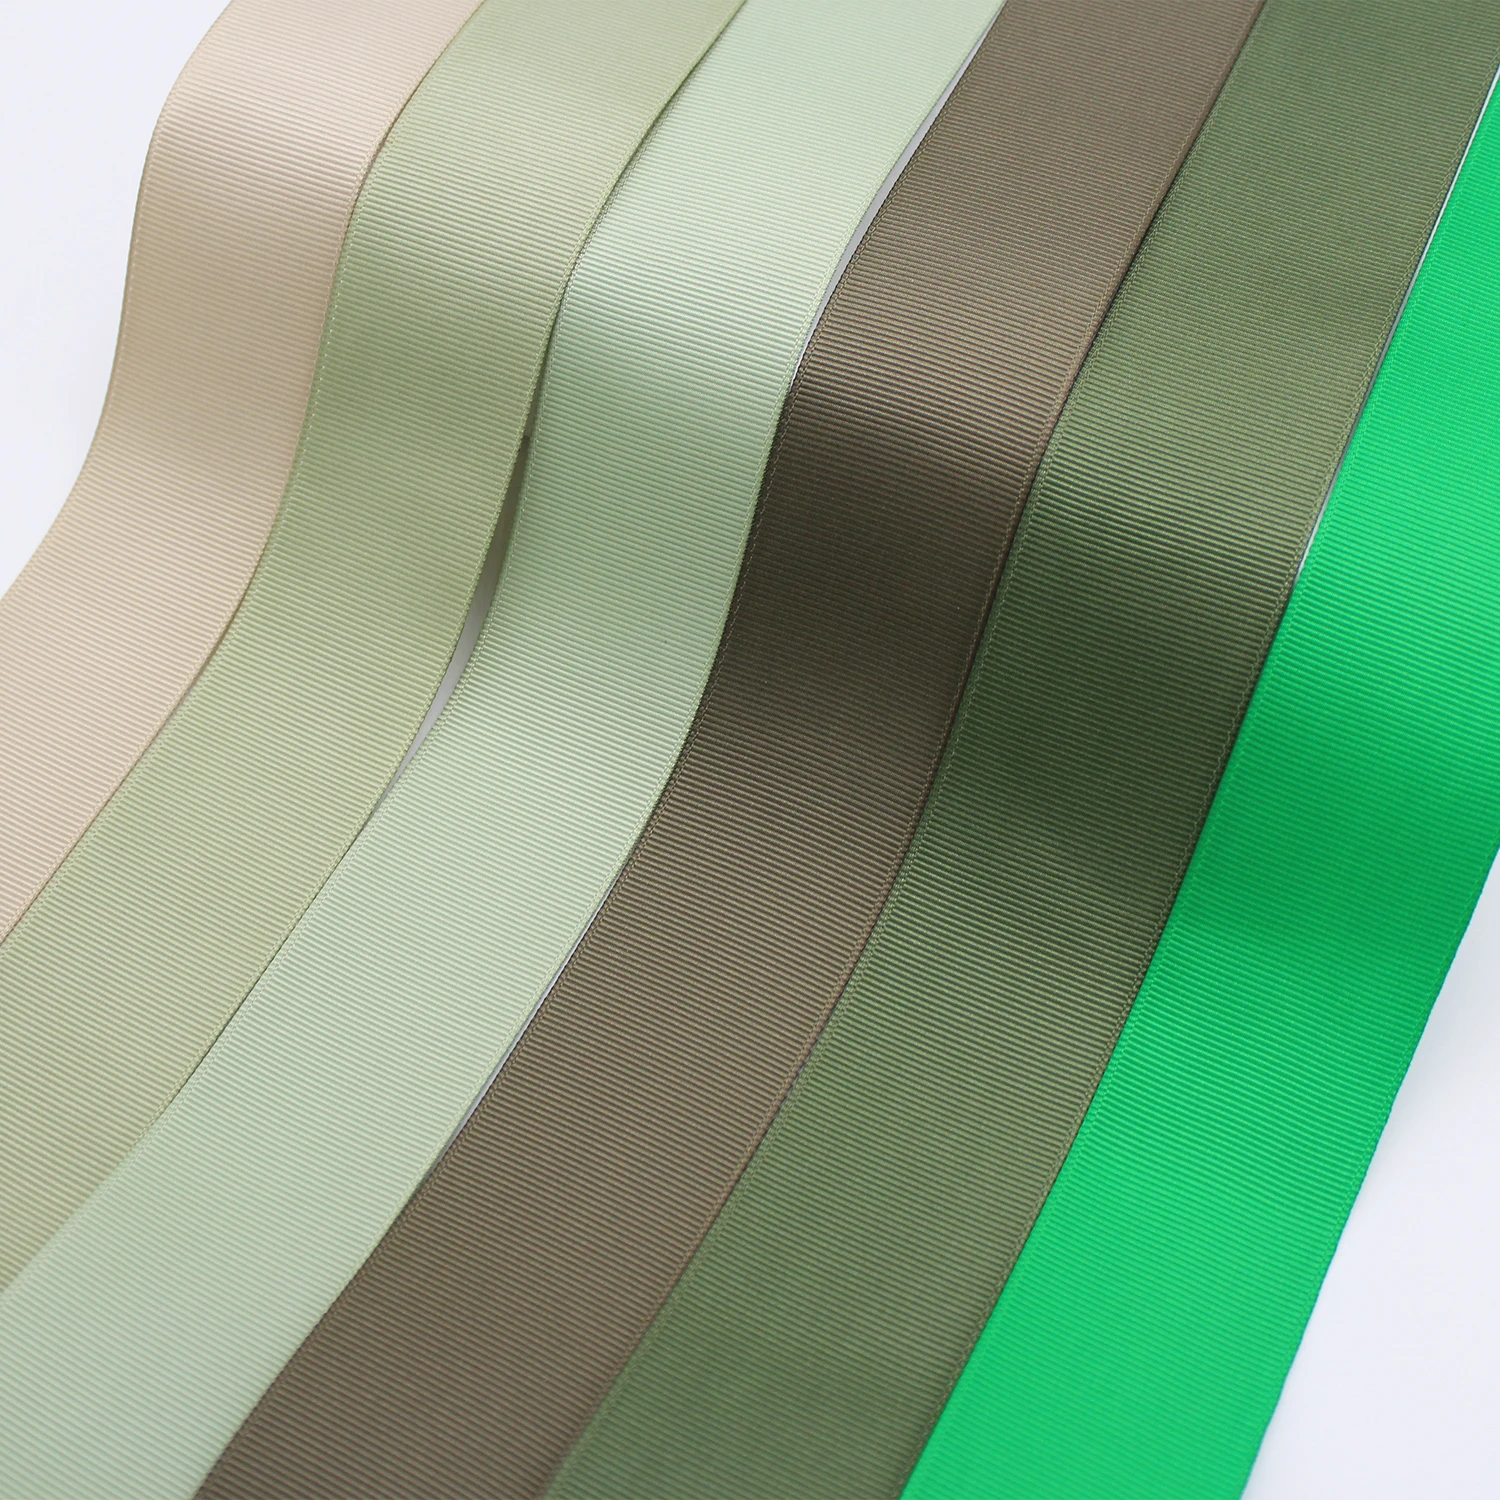 5 Meter/Lot Grosgrain Ribbon Satin Ribbon Green / Olive / Moss / Mint / Sage 2020 Fashion Color Craft DIY 6mm 9mm 16mm 25mm 38mm images - 6